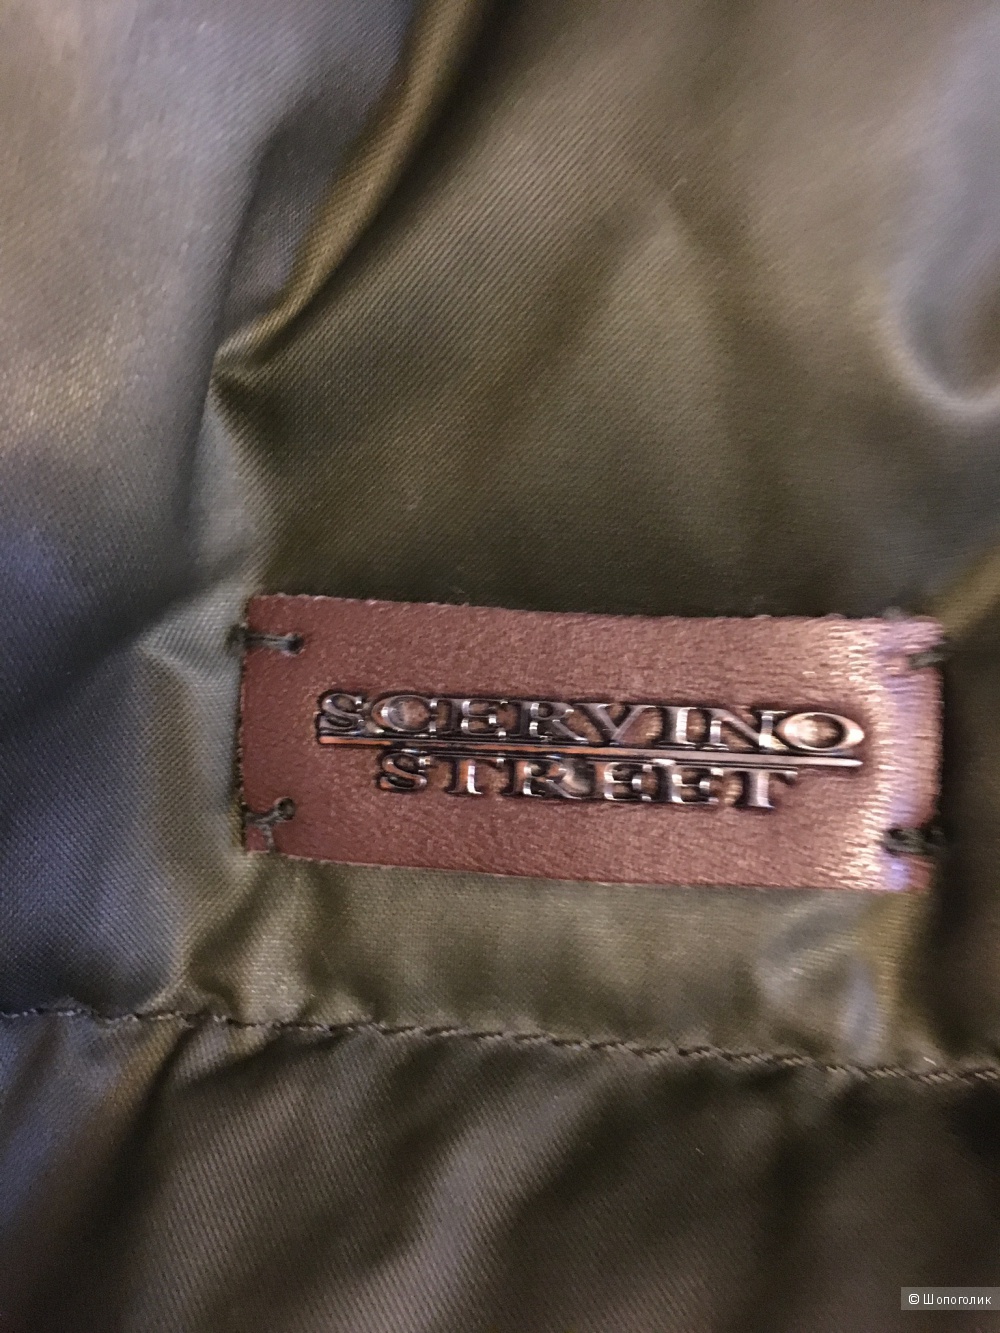 Куртка Scervino street мужская р52